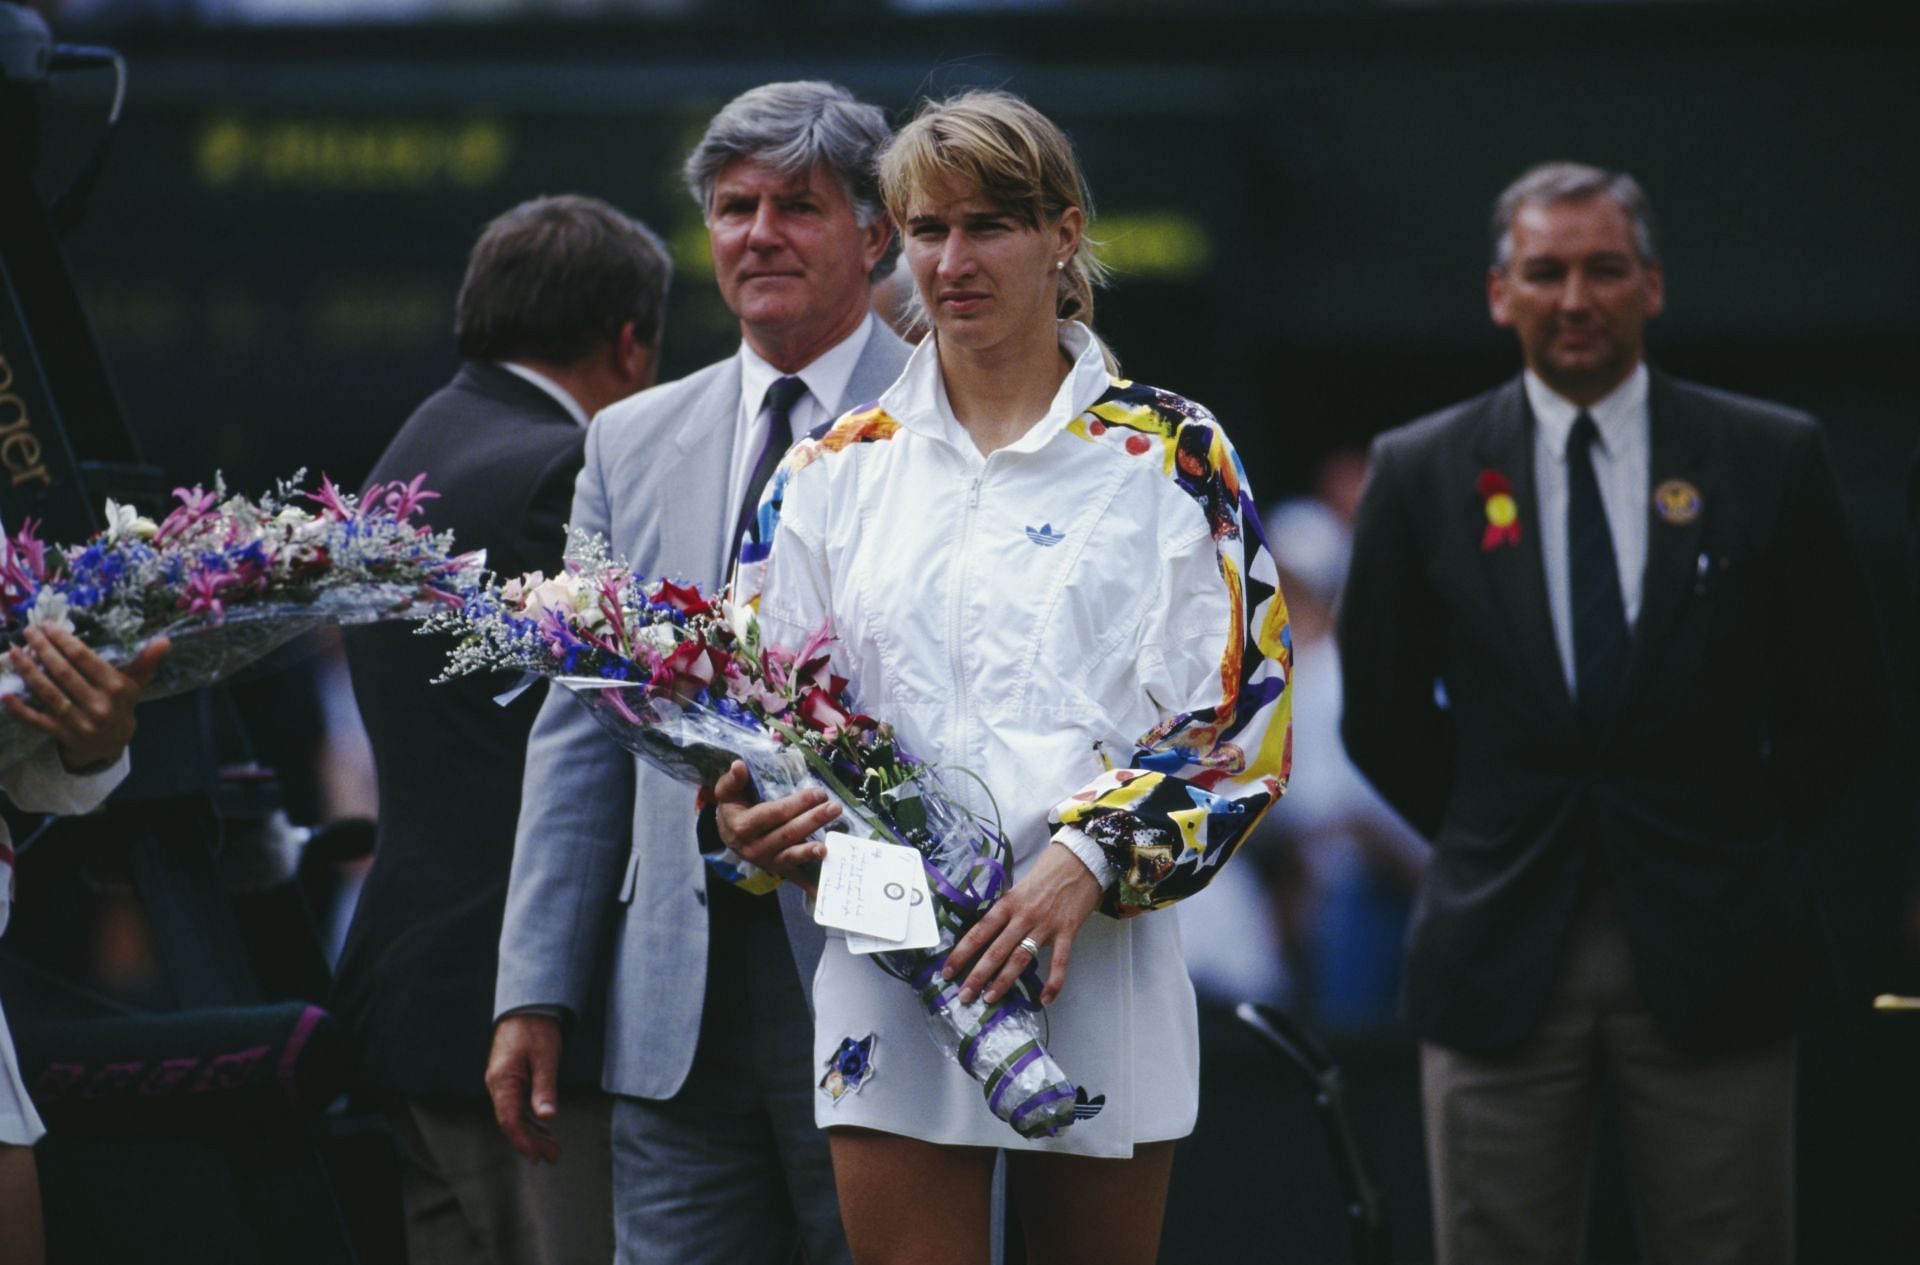 Steffi Graf won the Calendar Year Golden Slam in 1988